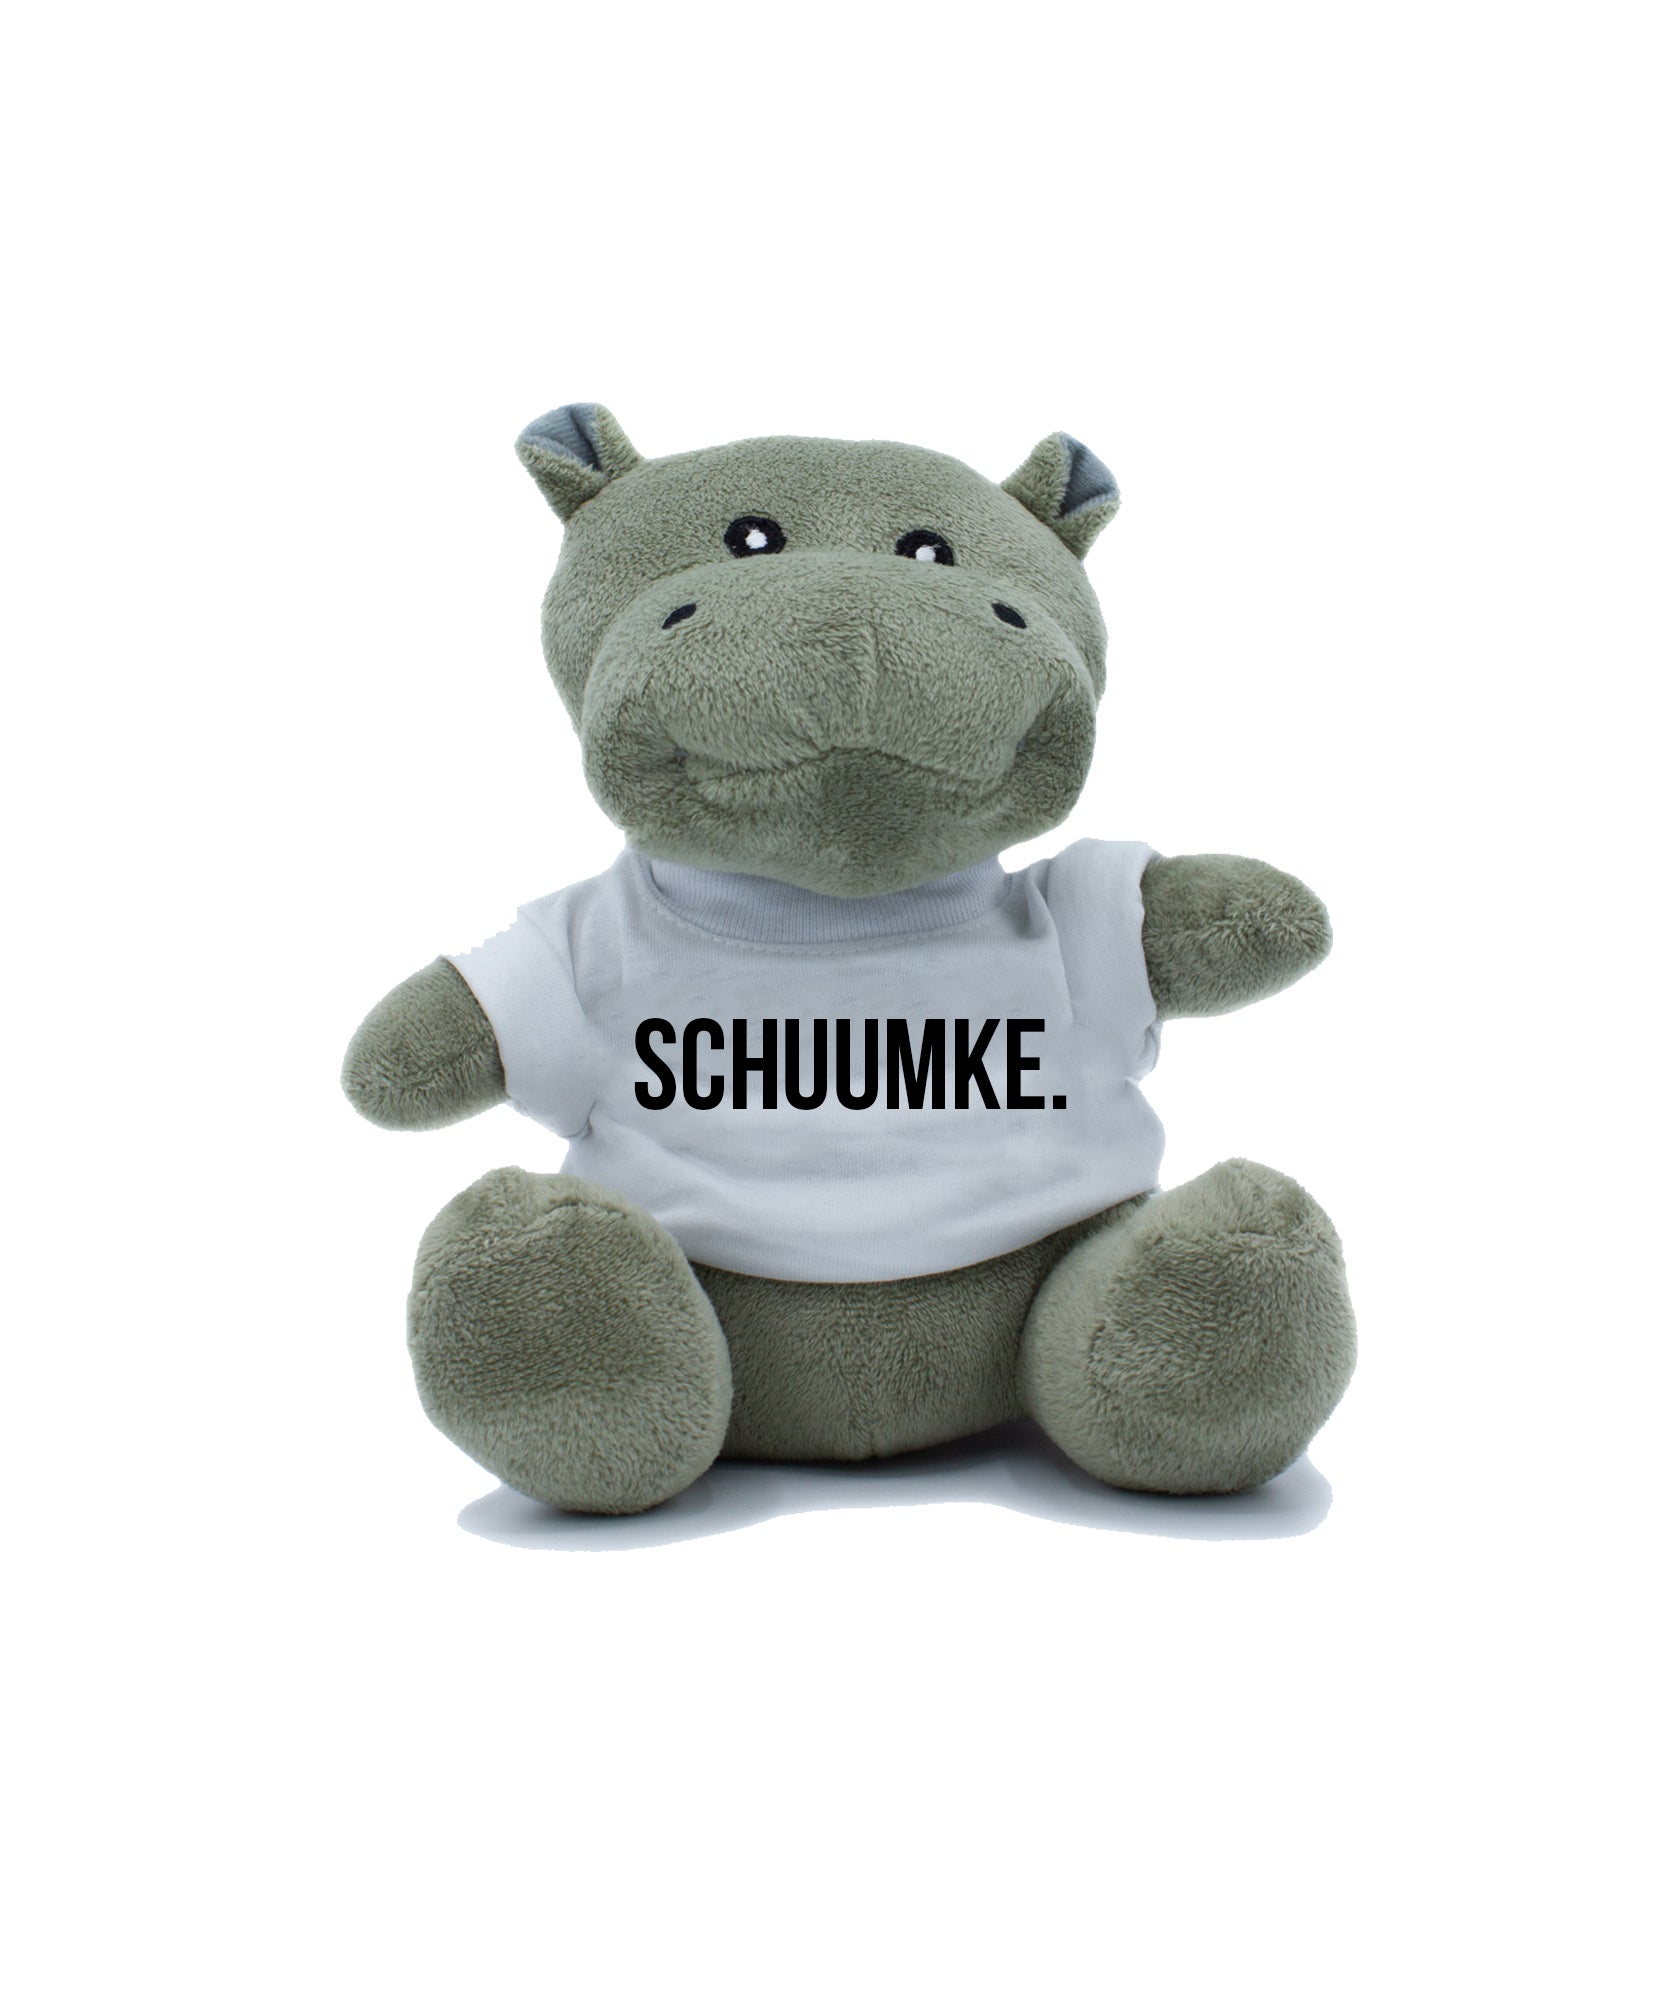 Knuffel Hippo met de tekst SCHUUMKE